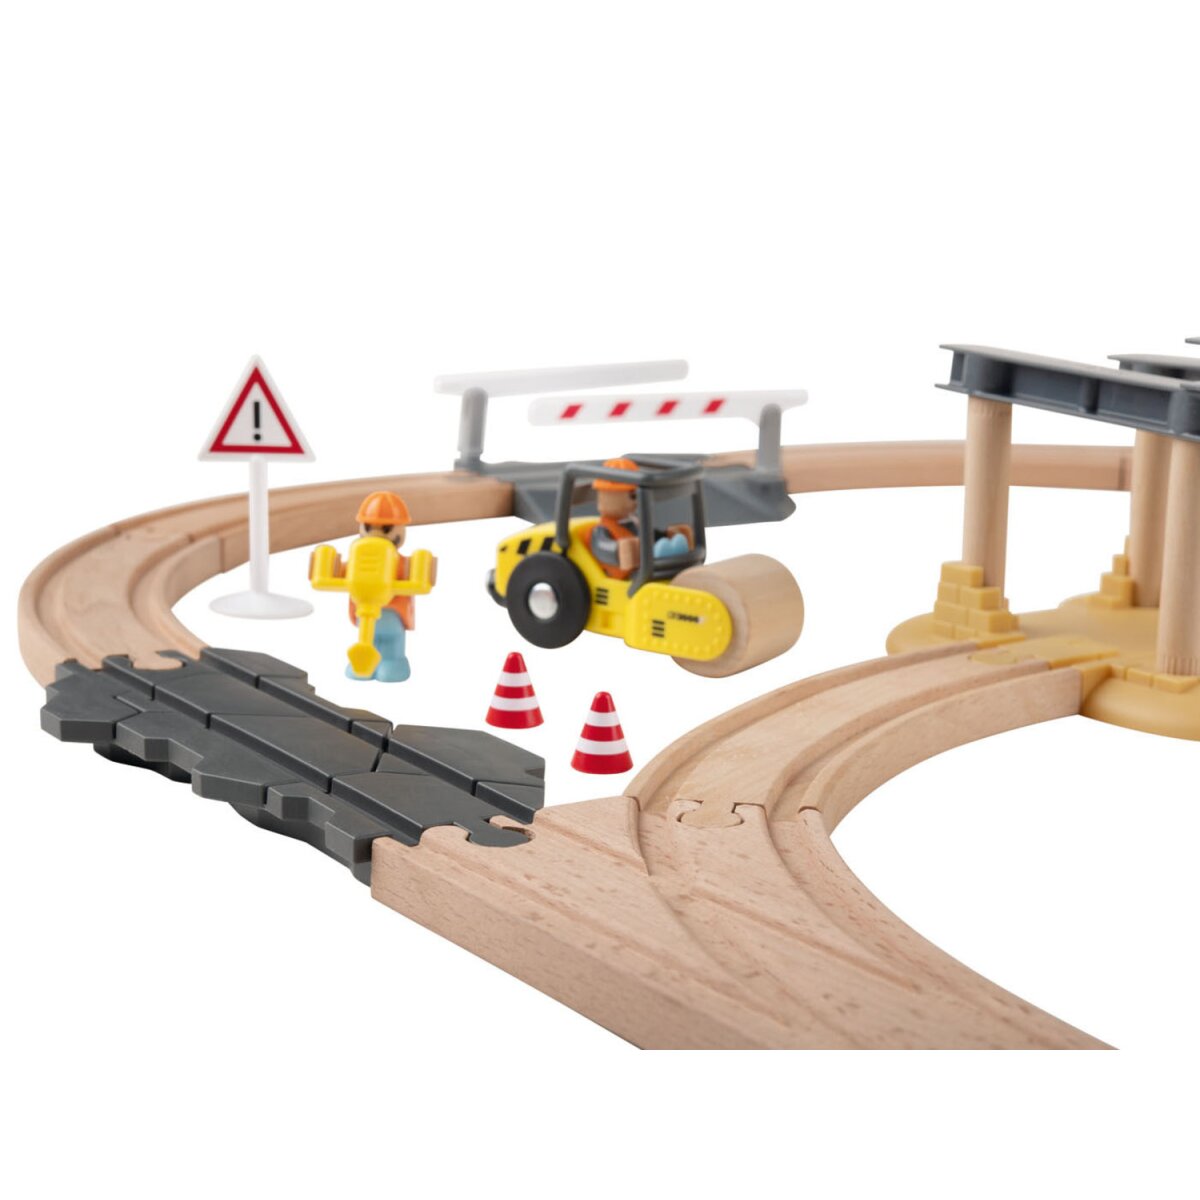 Playtive 24,99 € Holz-Eisenbahn-Set mit Buchenholz Baustelle, gut, - B-Ware